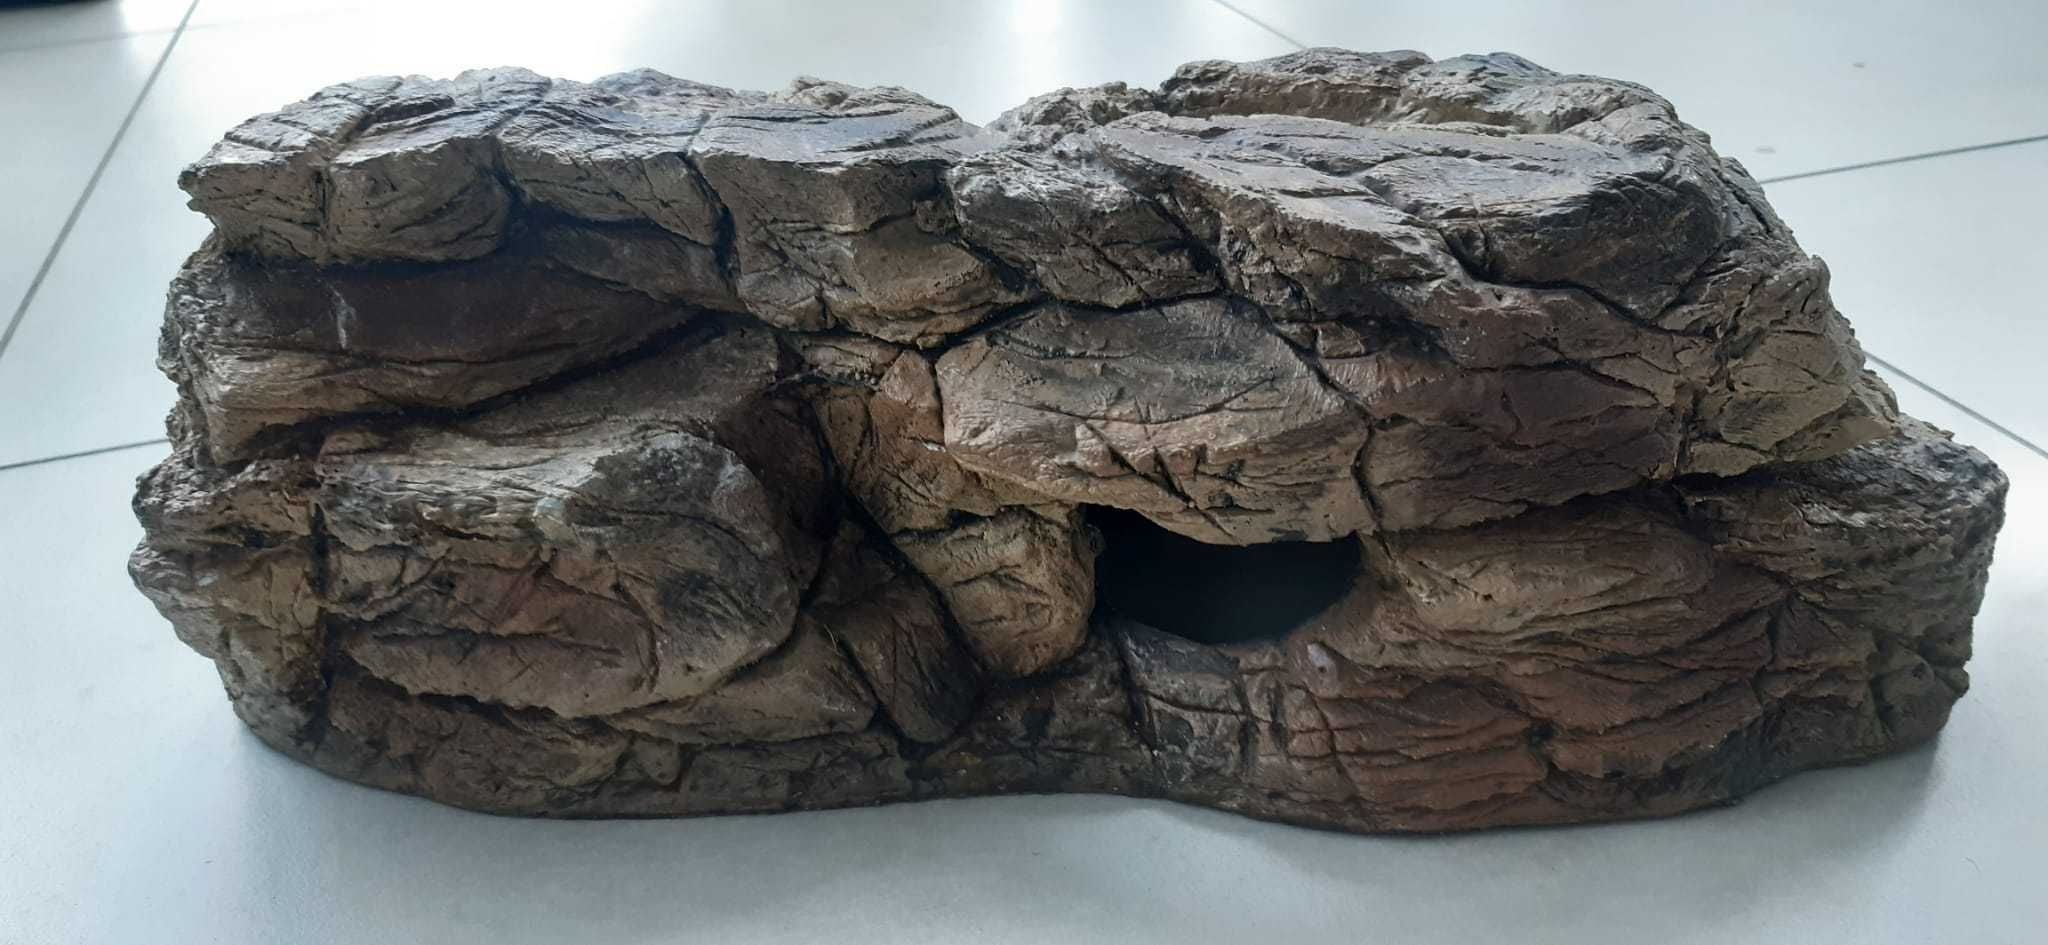 kryjówka jaskinia skała